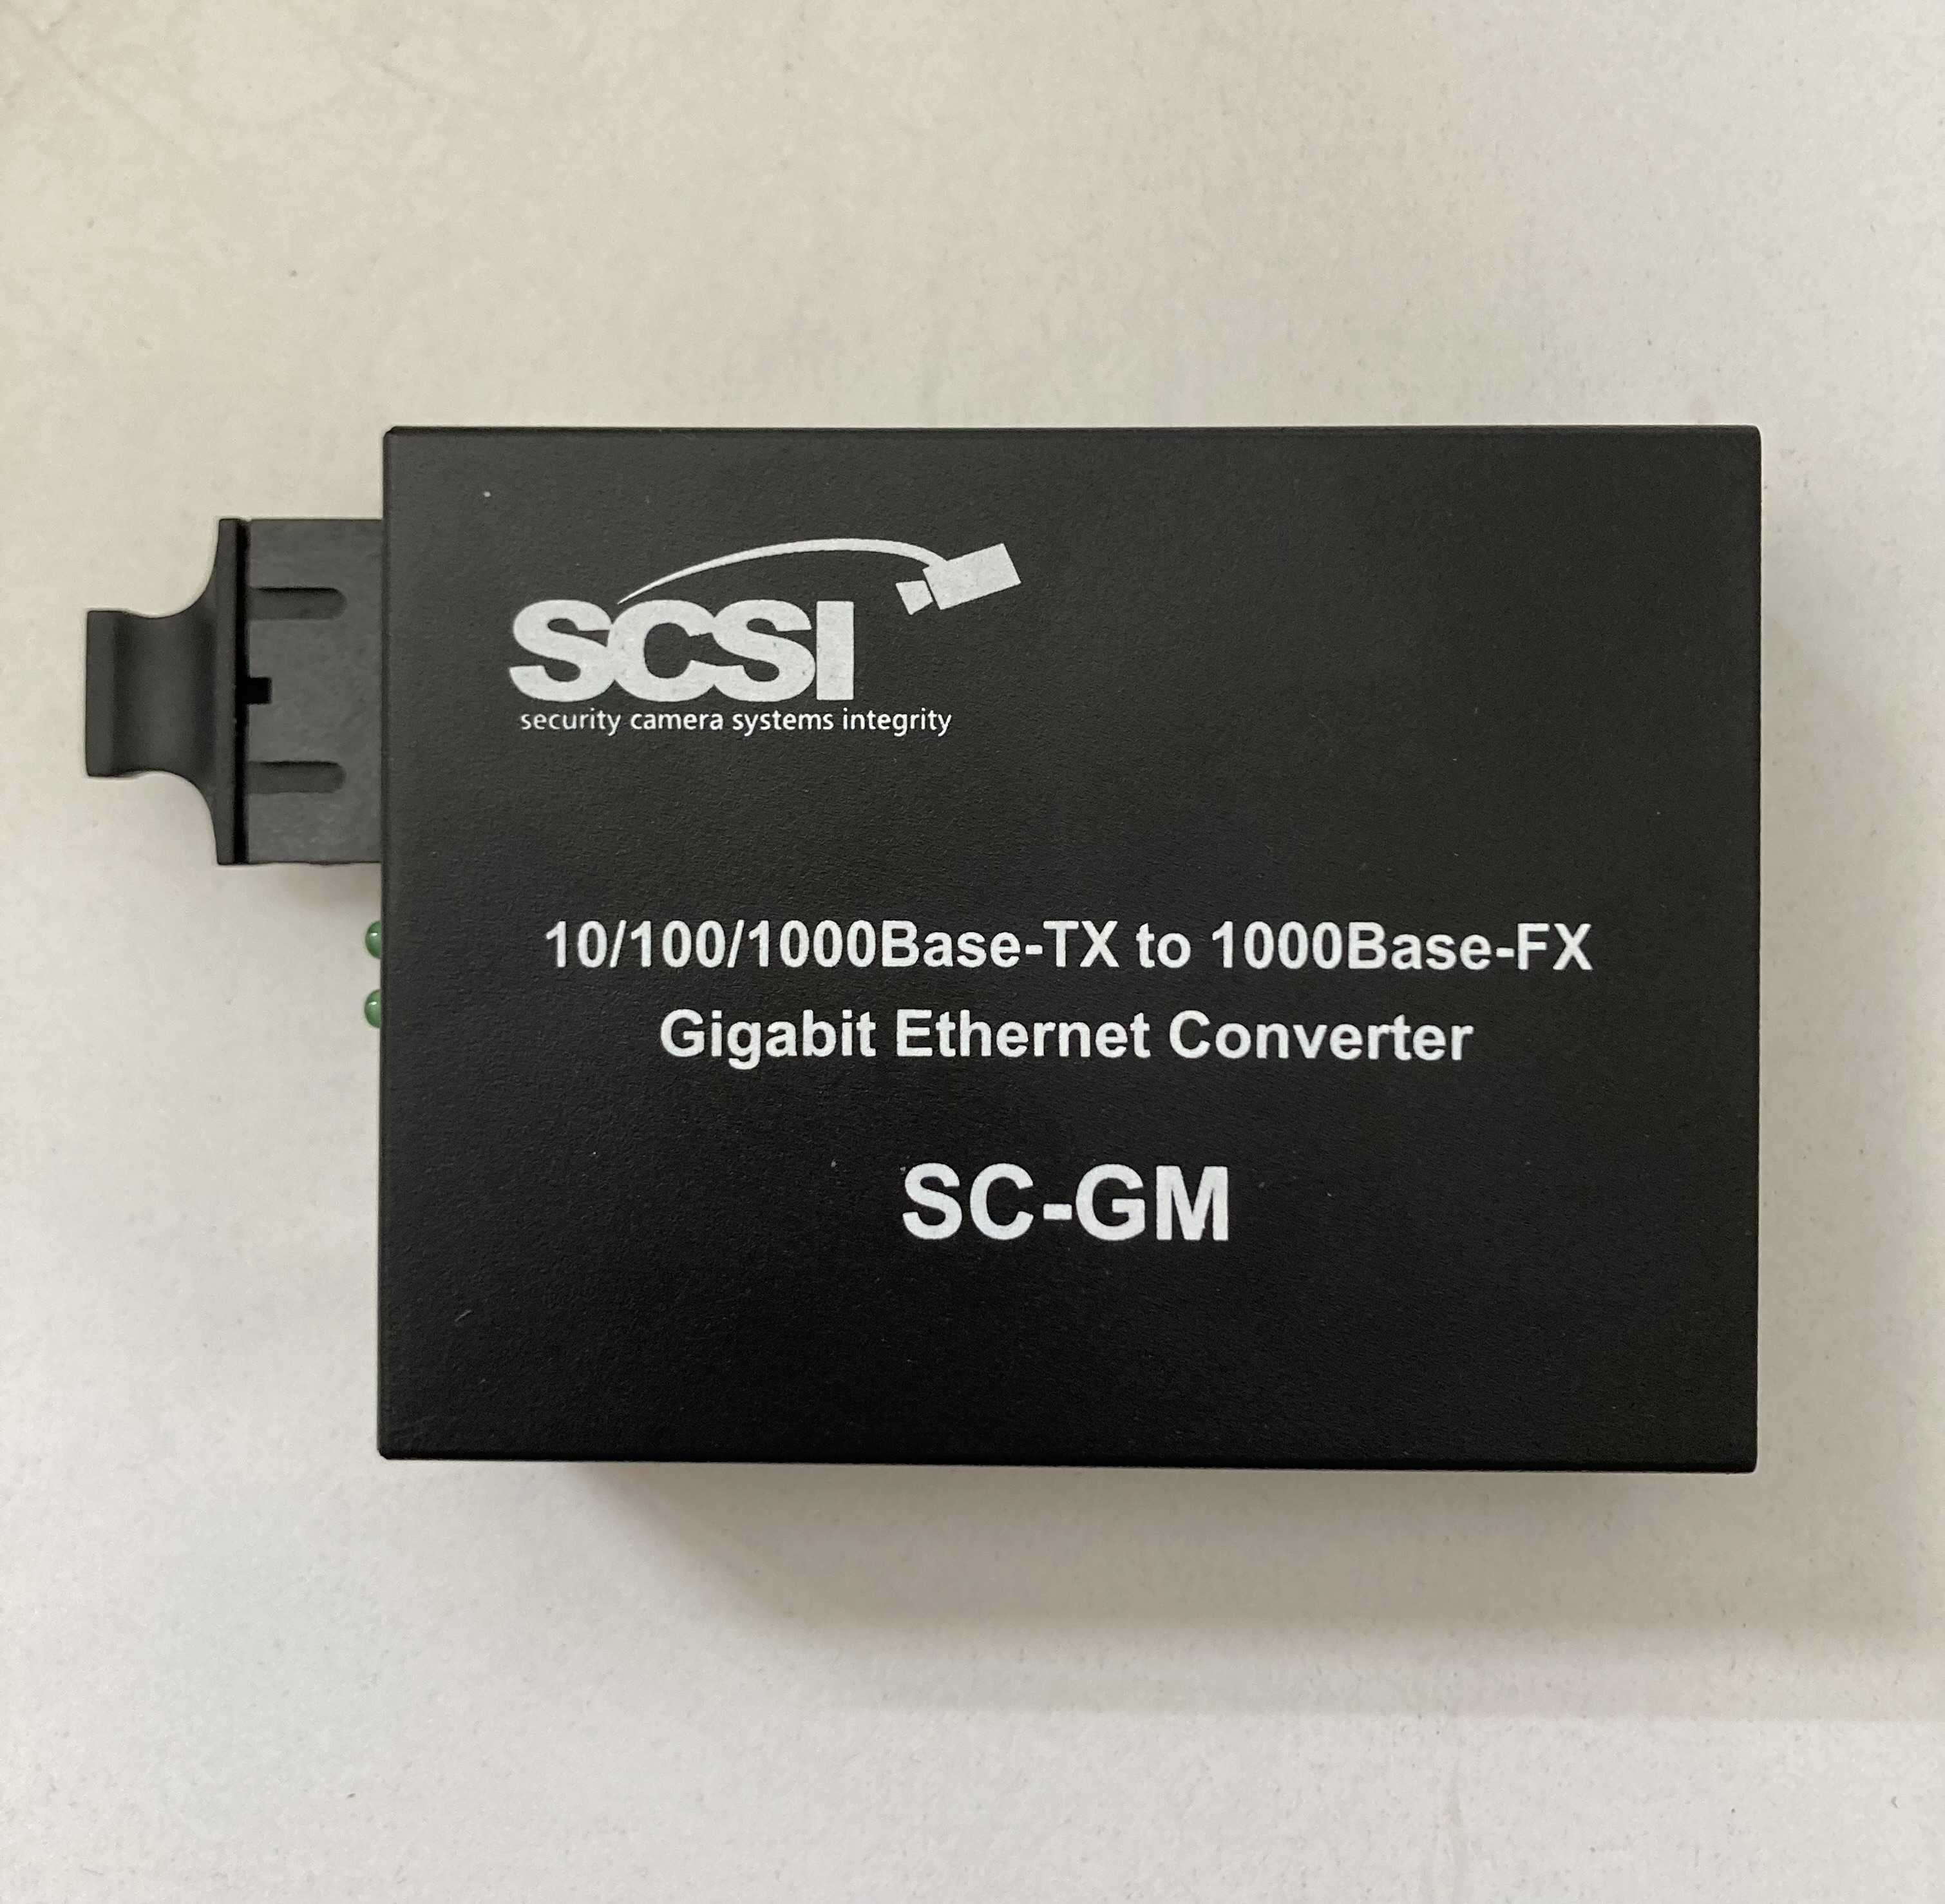 SCSI SC-GM